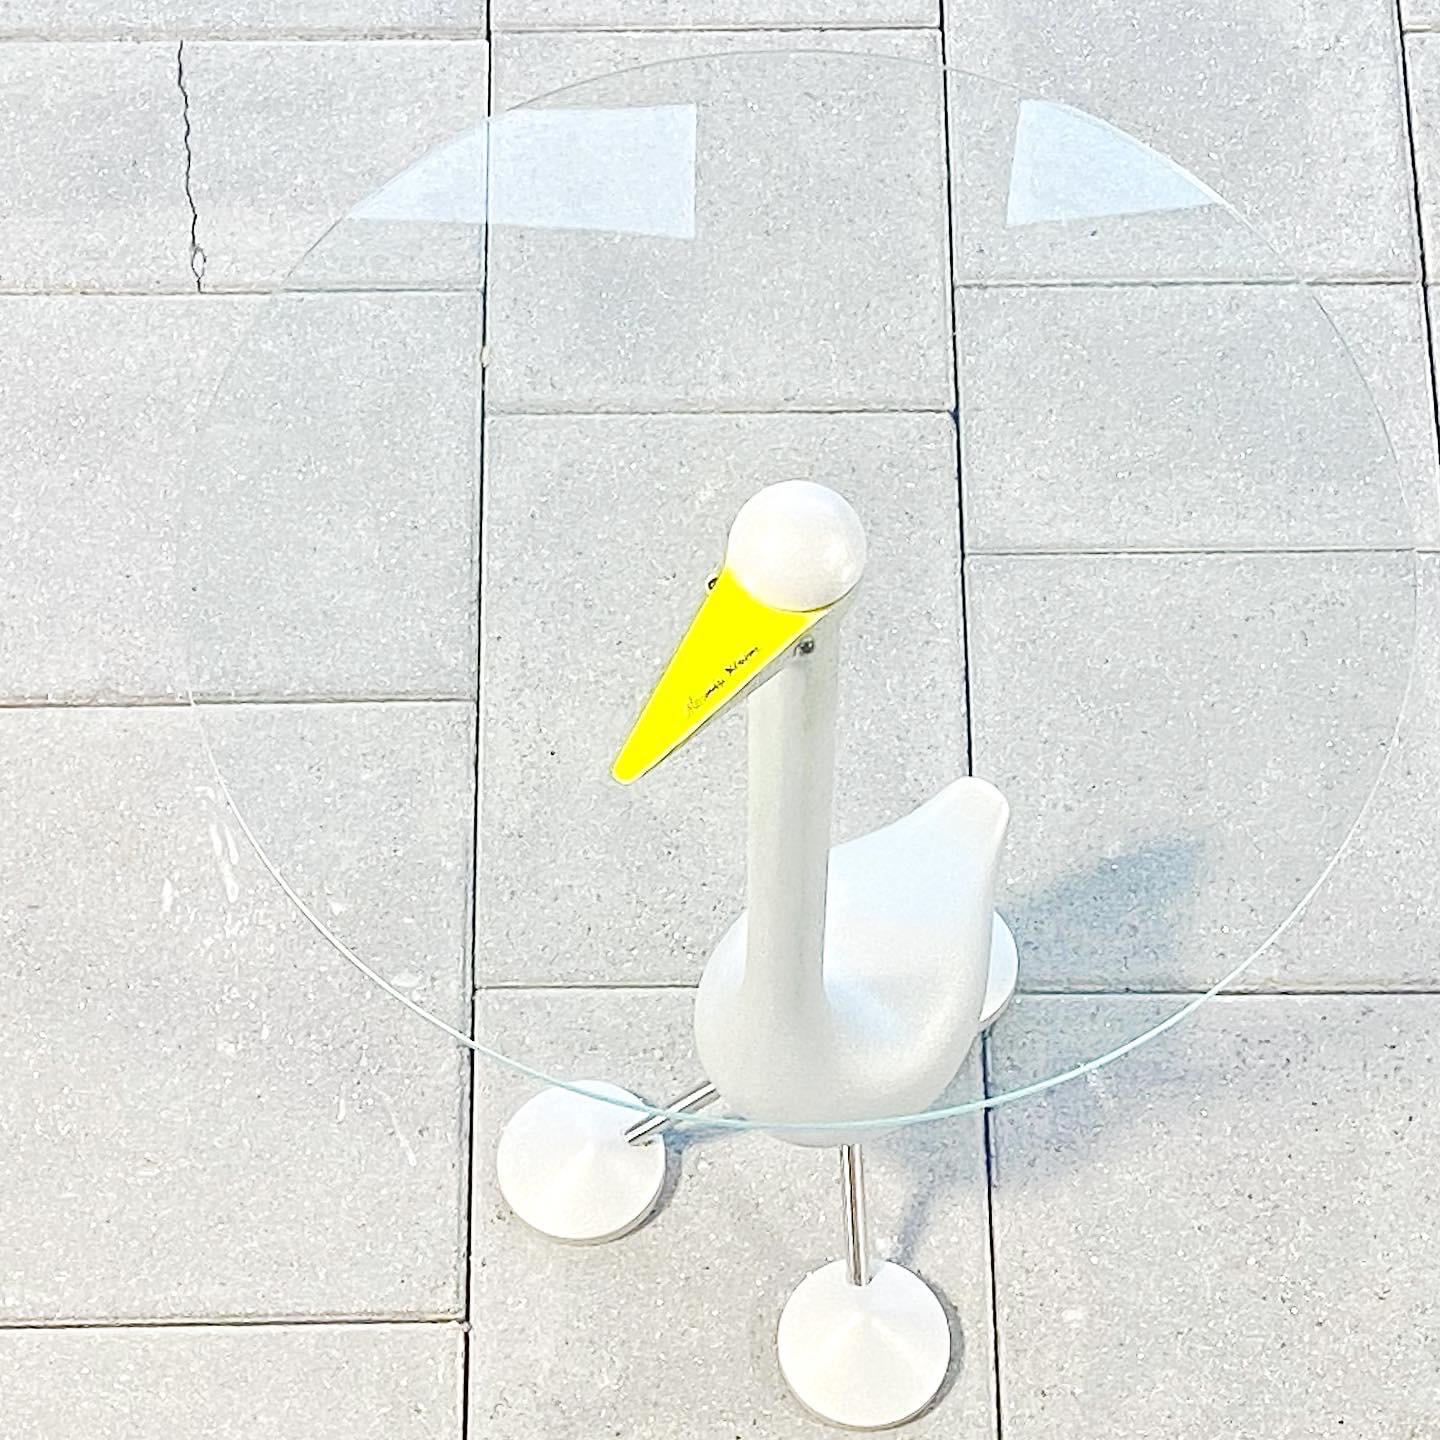 Table post-moderne Sirfo Goose de la Collection Zanotta Editioni, conçue par Alessandro Mendini en 1986.

fabriqué par Zanotta, Italie

Aluminium peint avec plateau en verre, avec la signature d'Alessandro Mendini.

L'attitude artistique